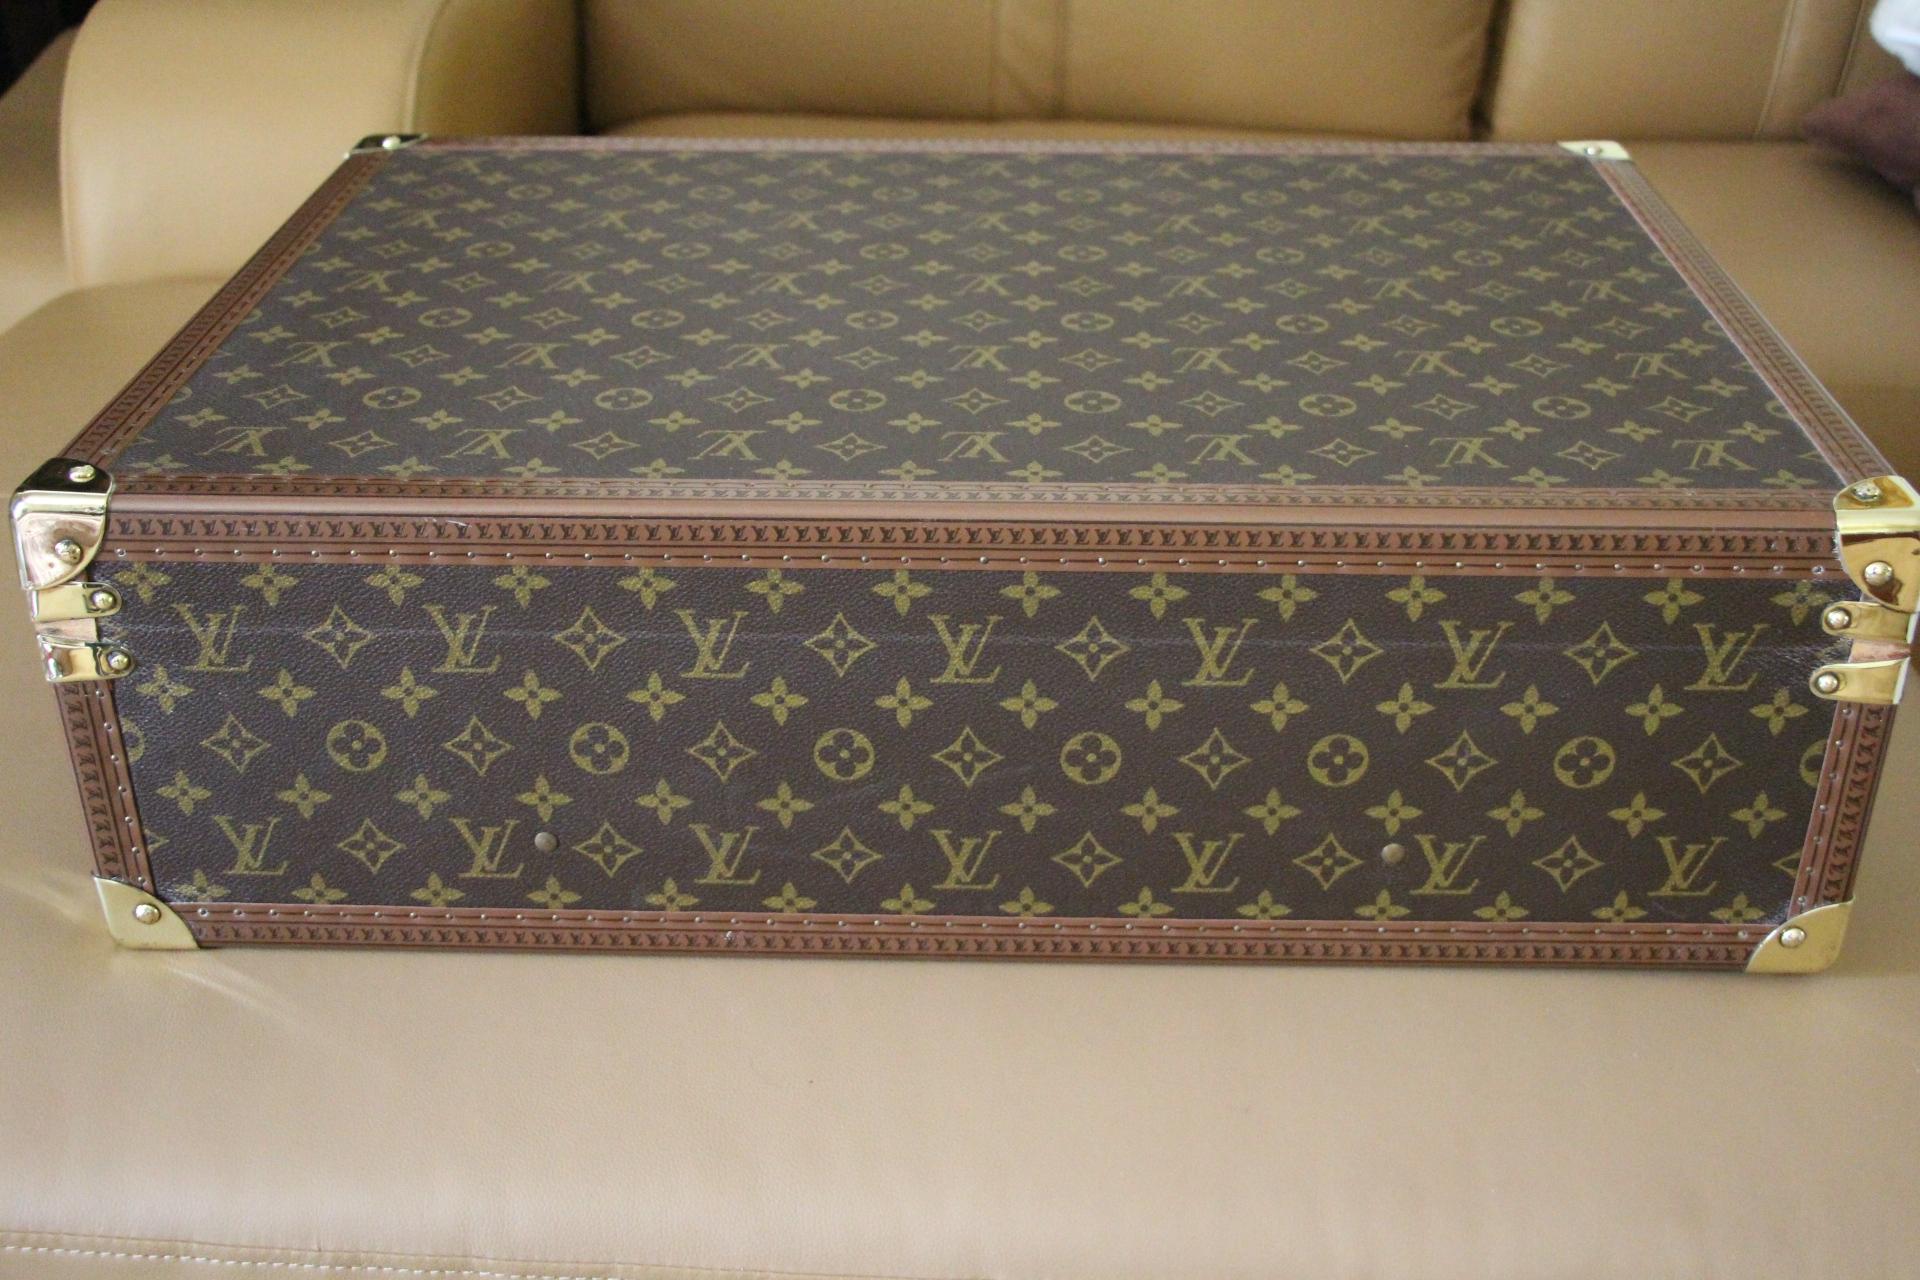  Louis Vuitton Suitcase 60 cm,  Louis Vuitton Trunk, Vuitton 60 Suitcase 4